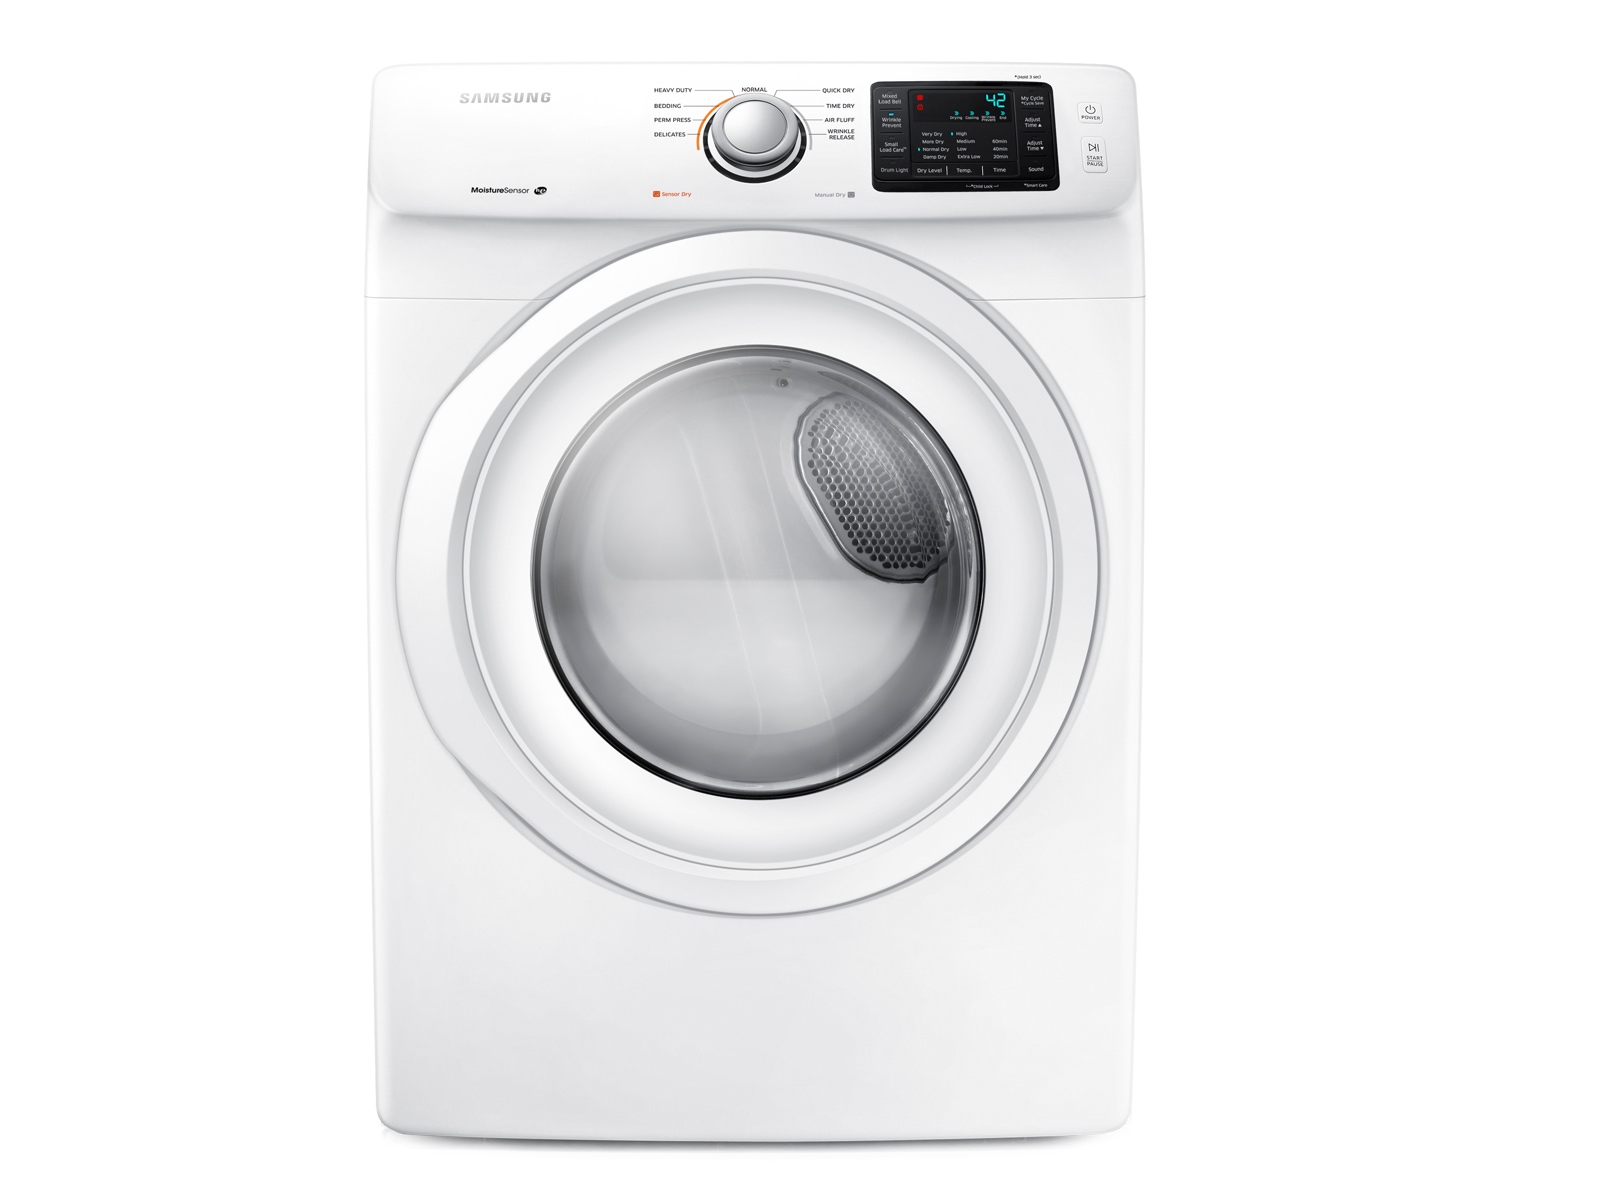 Samsung 7.5 cu. ft. Gas Dryer in White